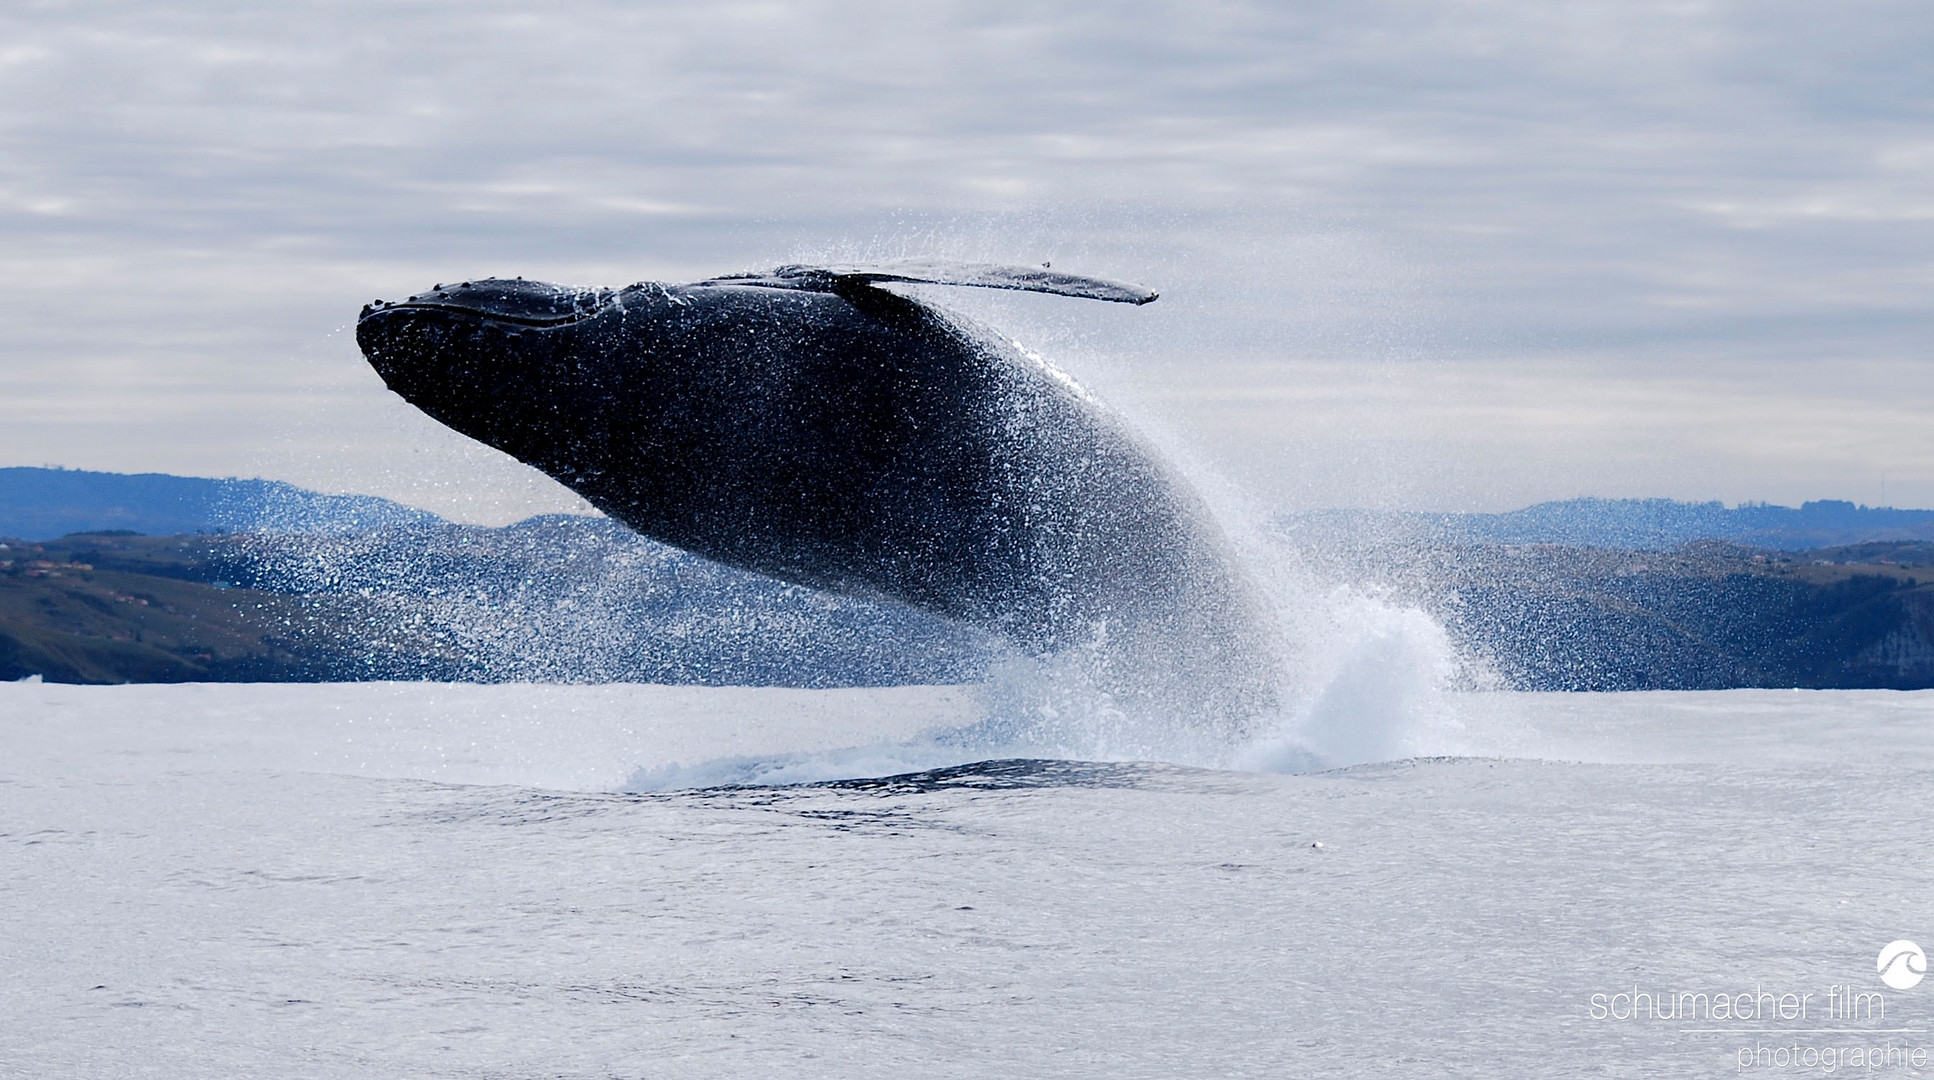 Sardine Run - "whale breaching"